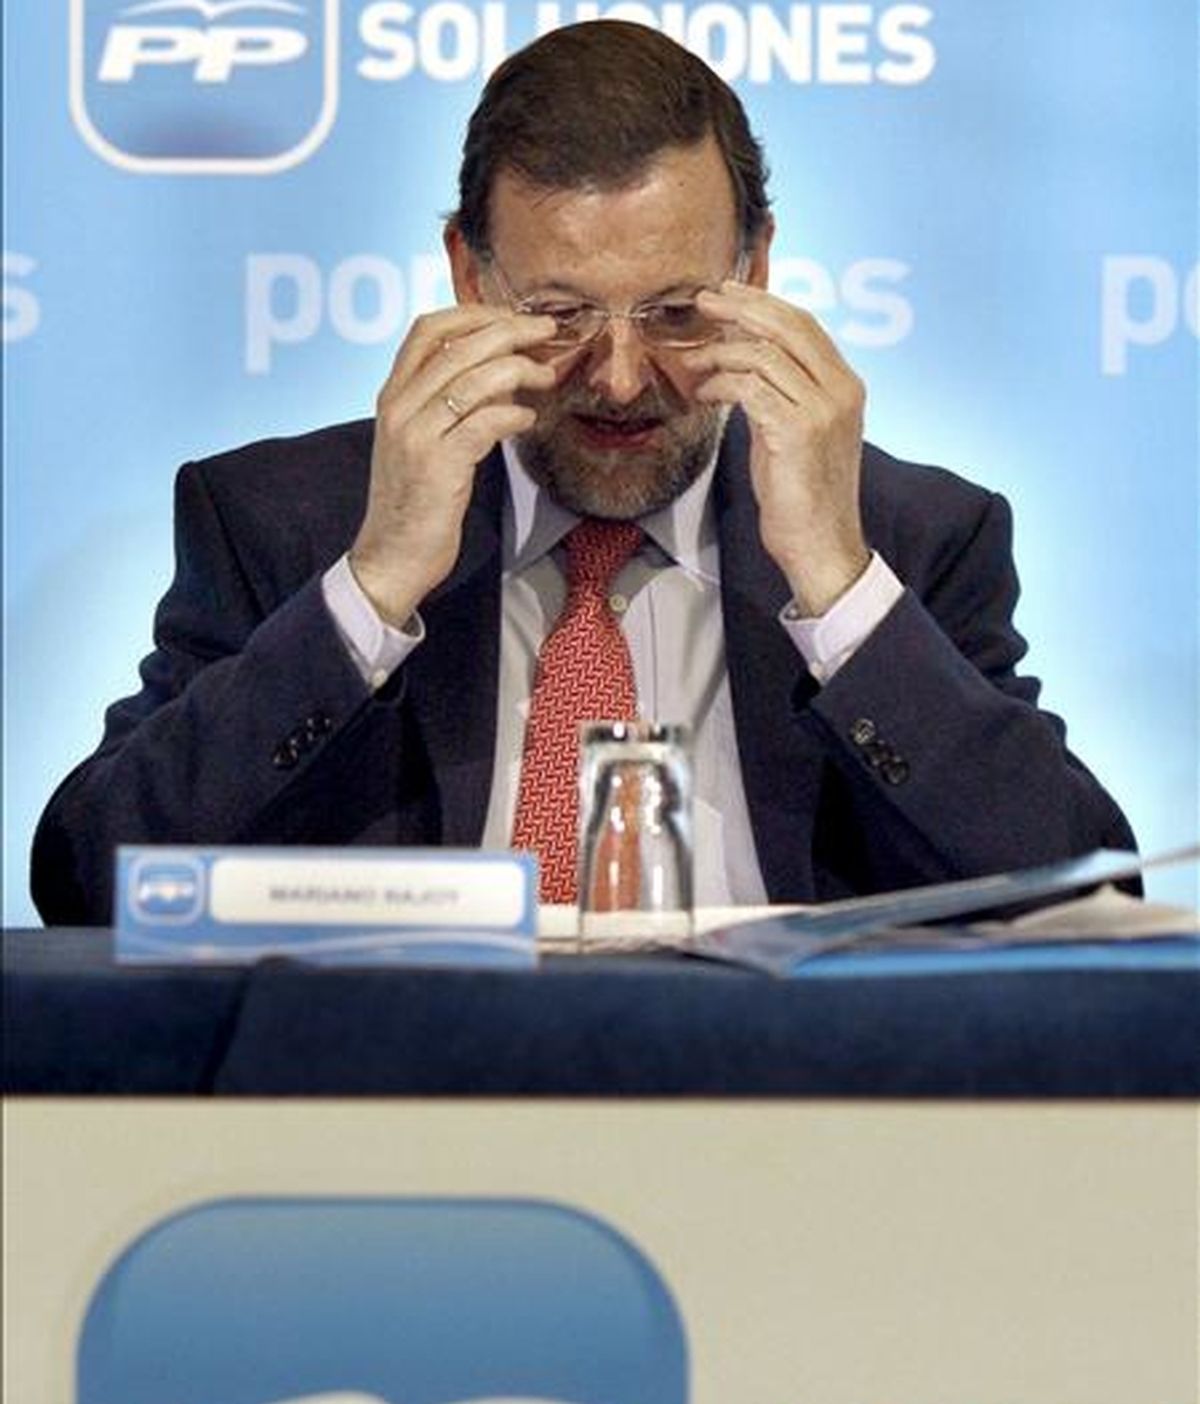 El presidente del PP, Mariano Rajoy. EFE/Archivo